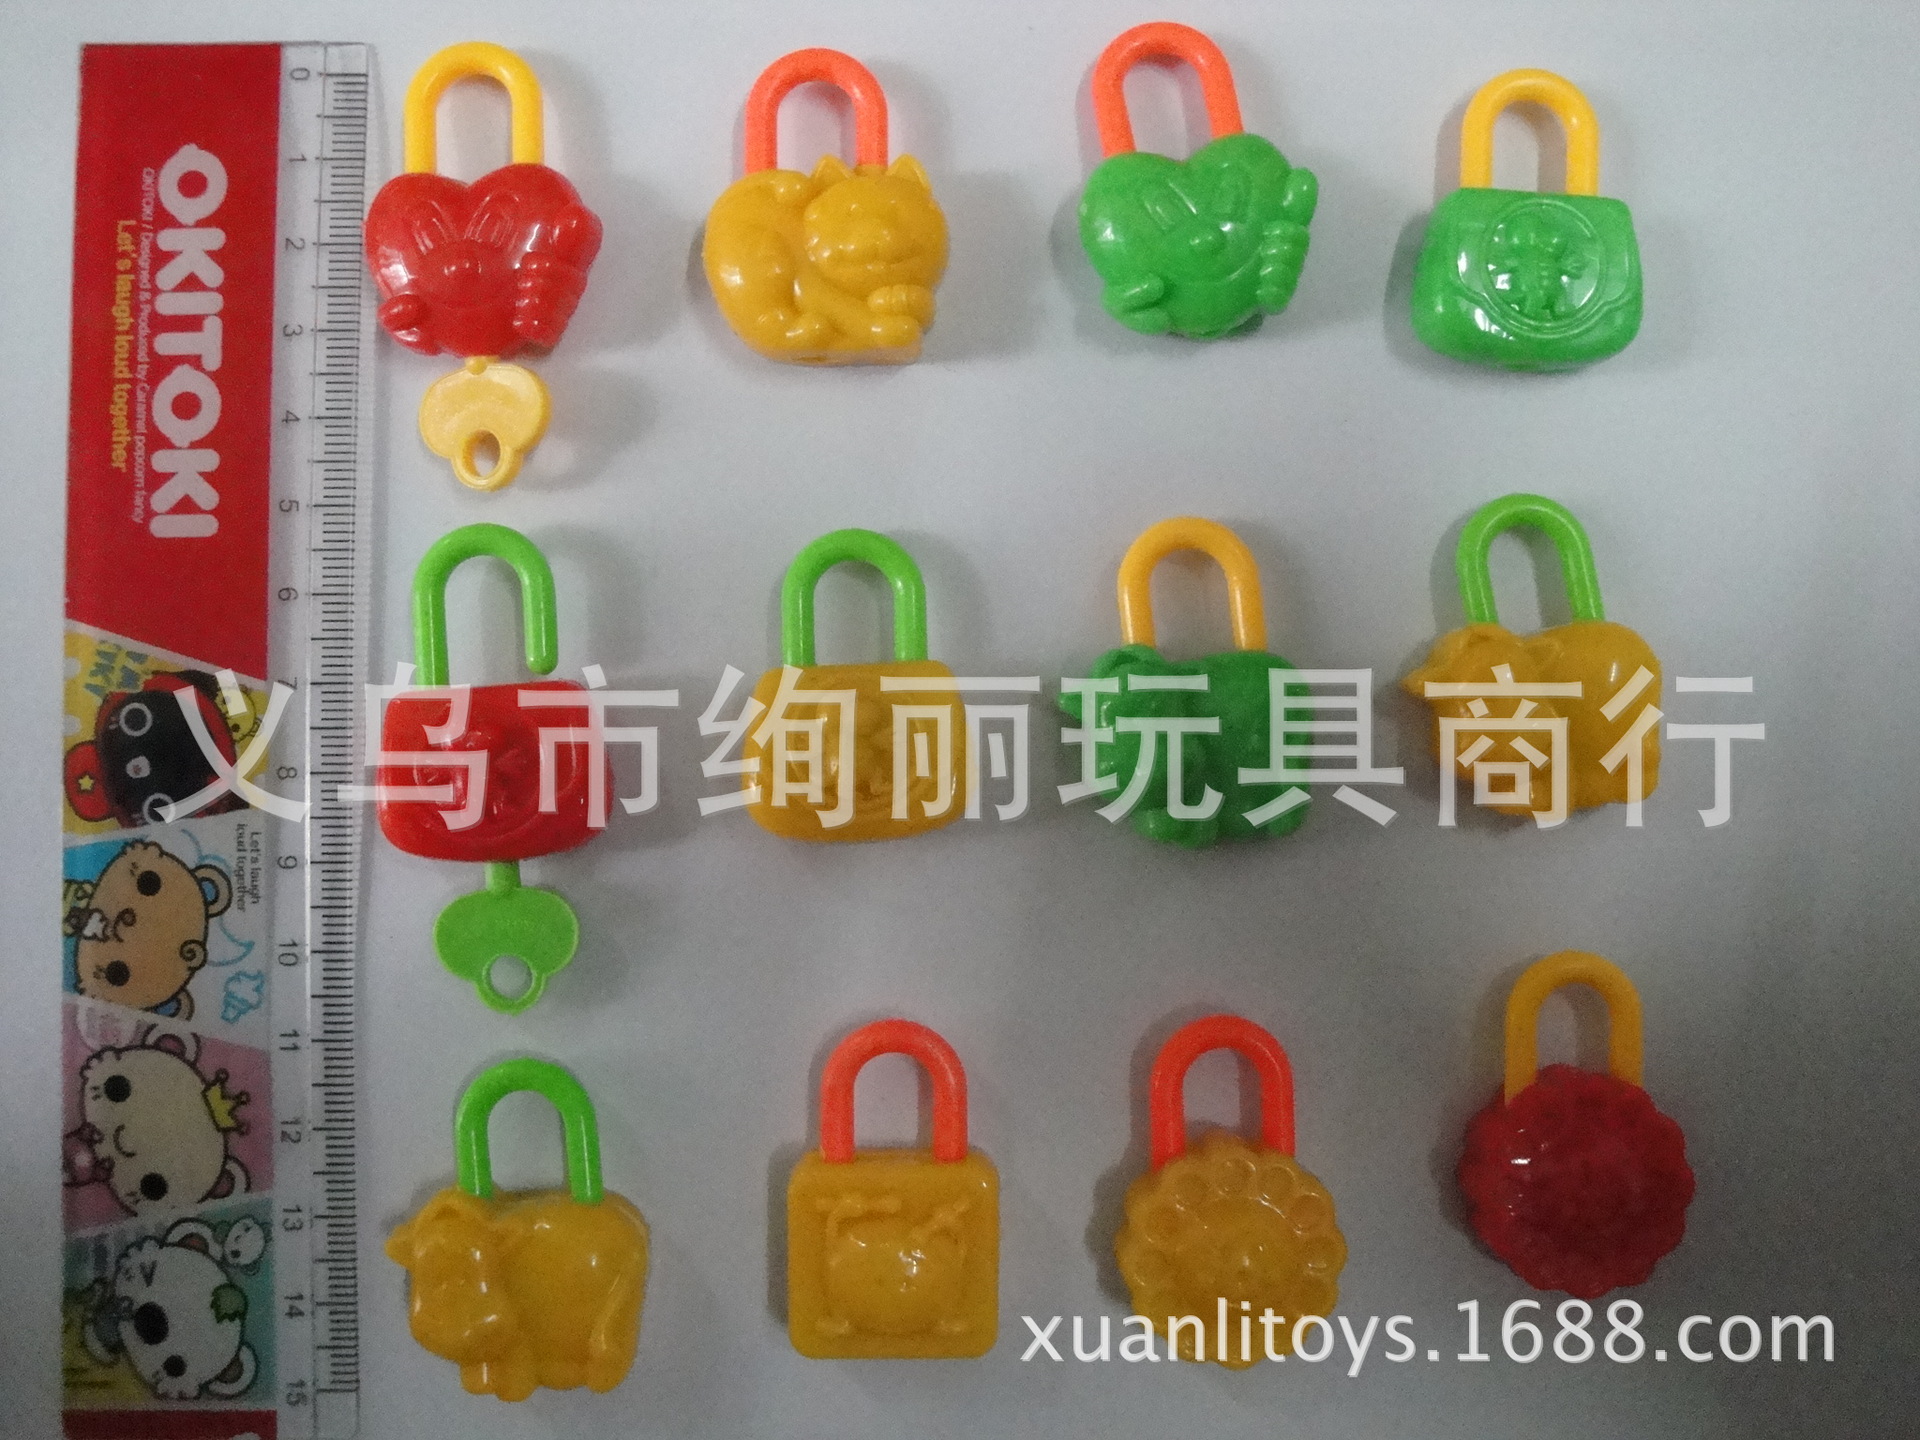 塑料儿童益智锁头玩具 赠品塑料卡通锁玩具 适合45mm扭蛋小玩具